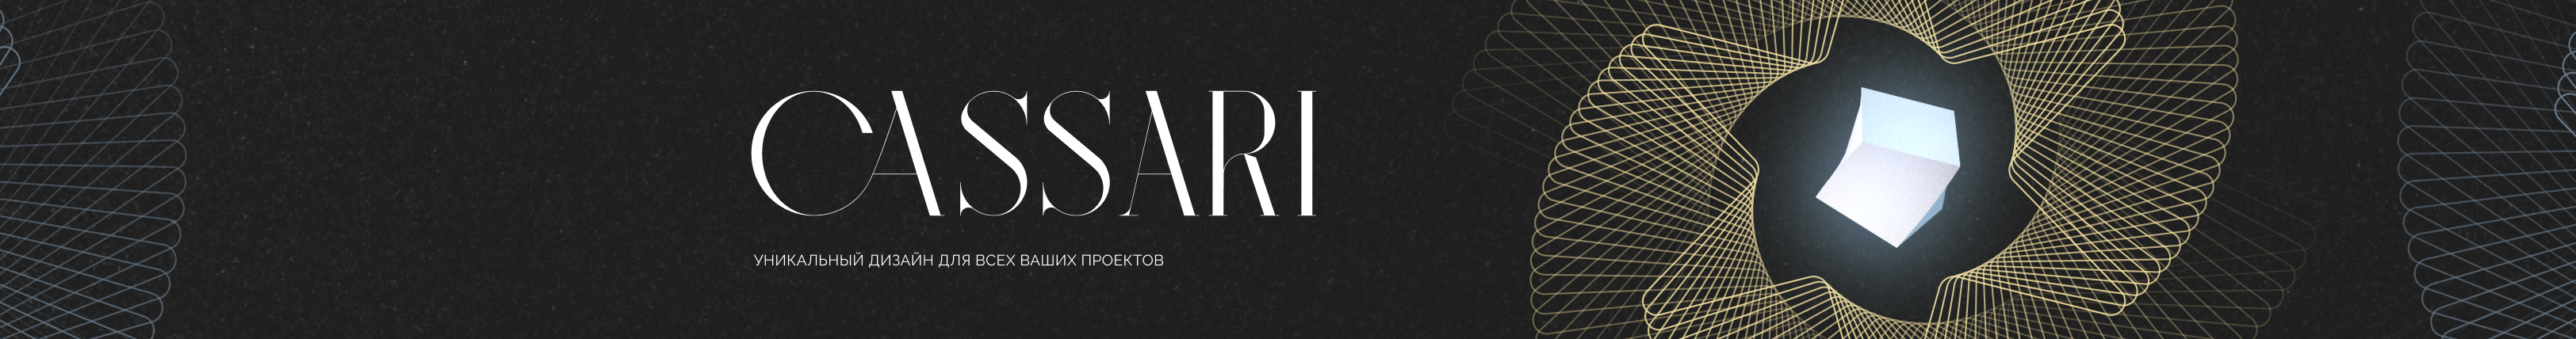 Cassari Dark's profile banner